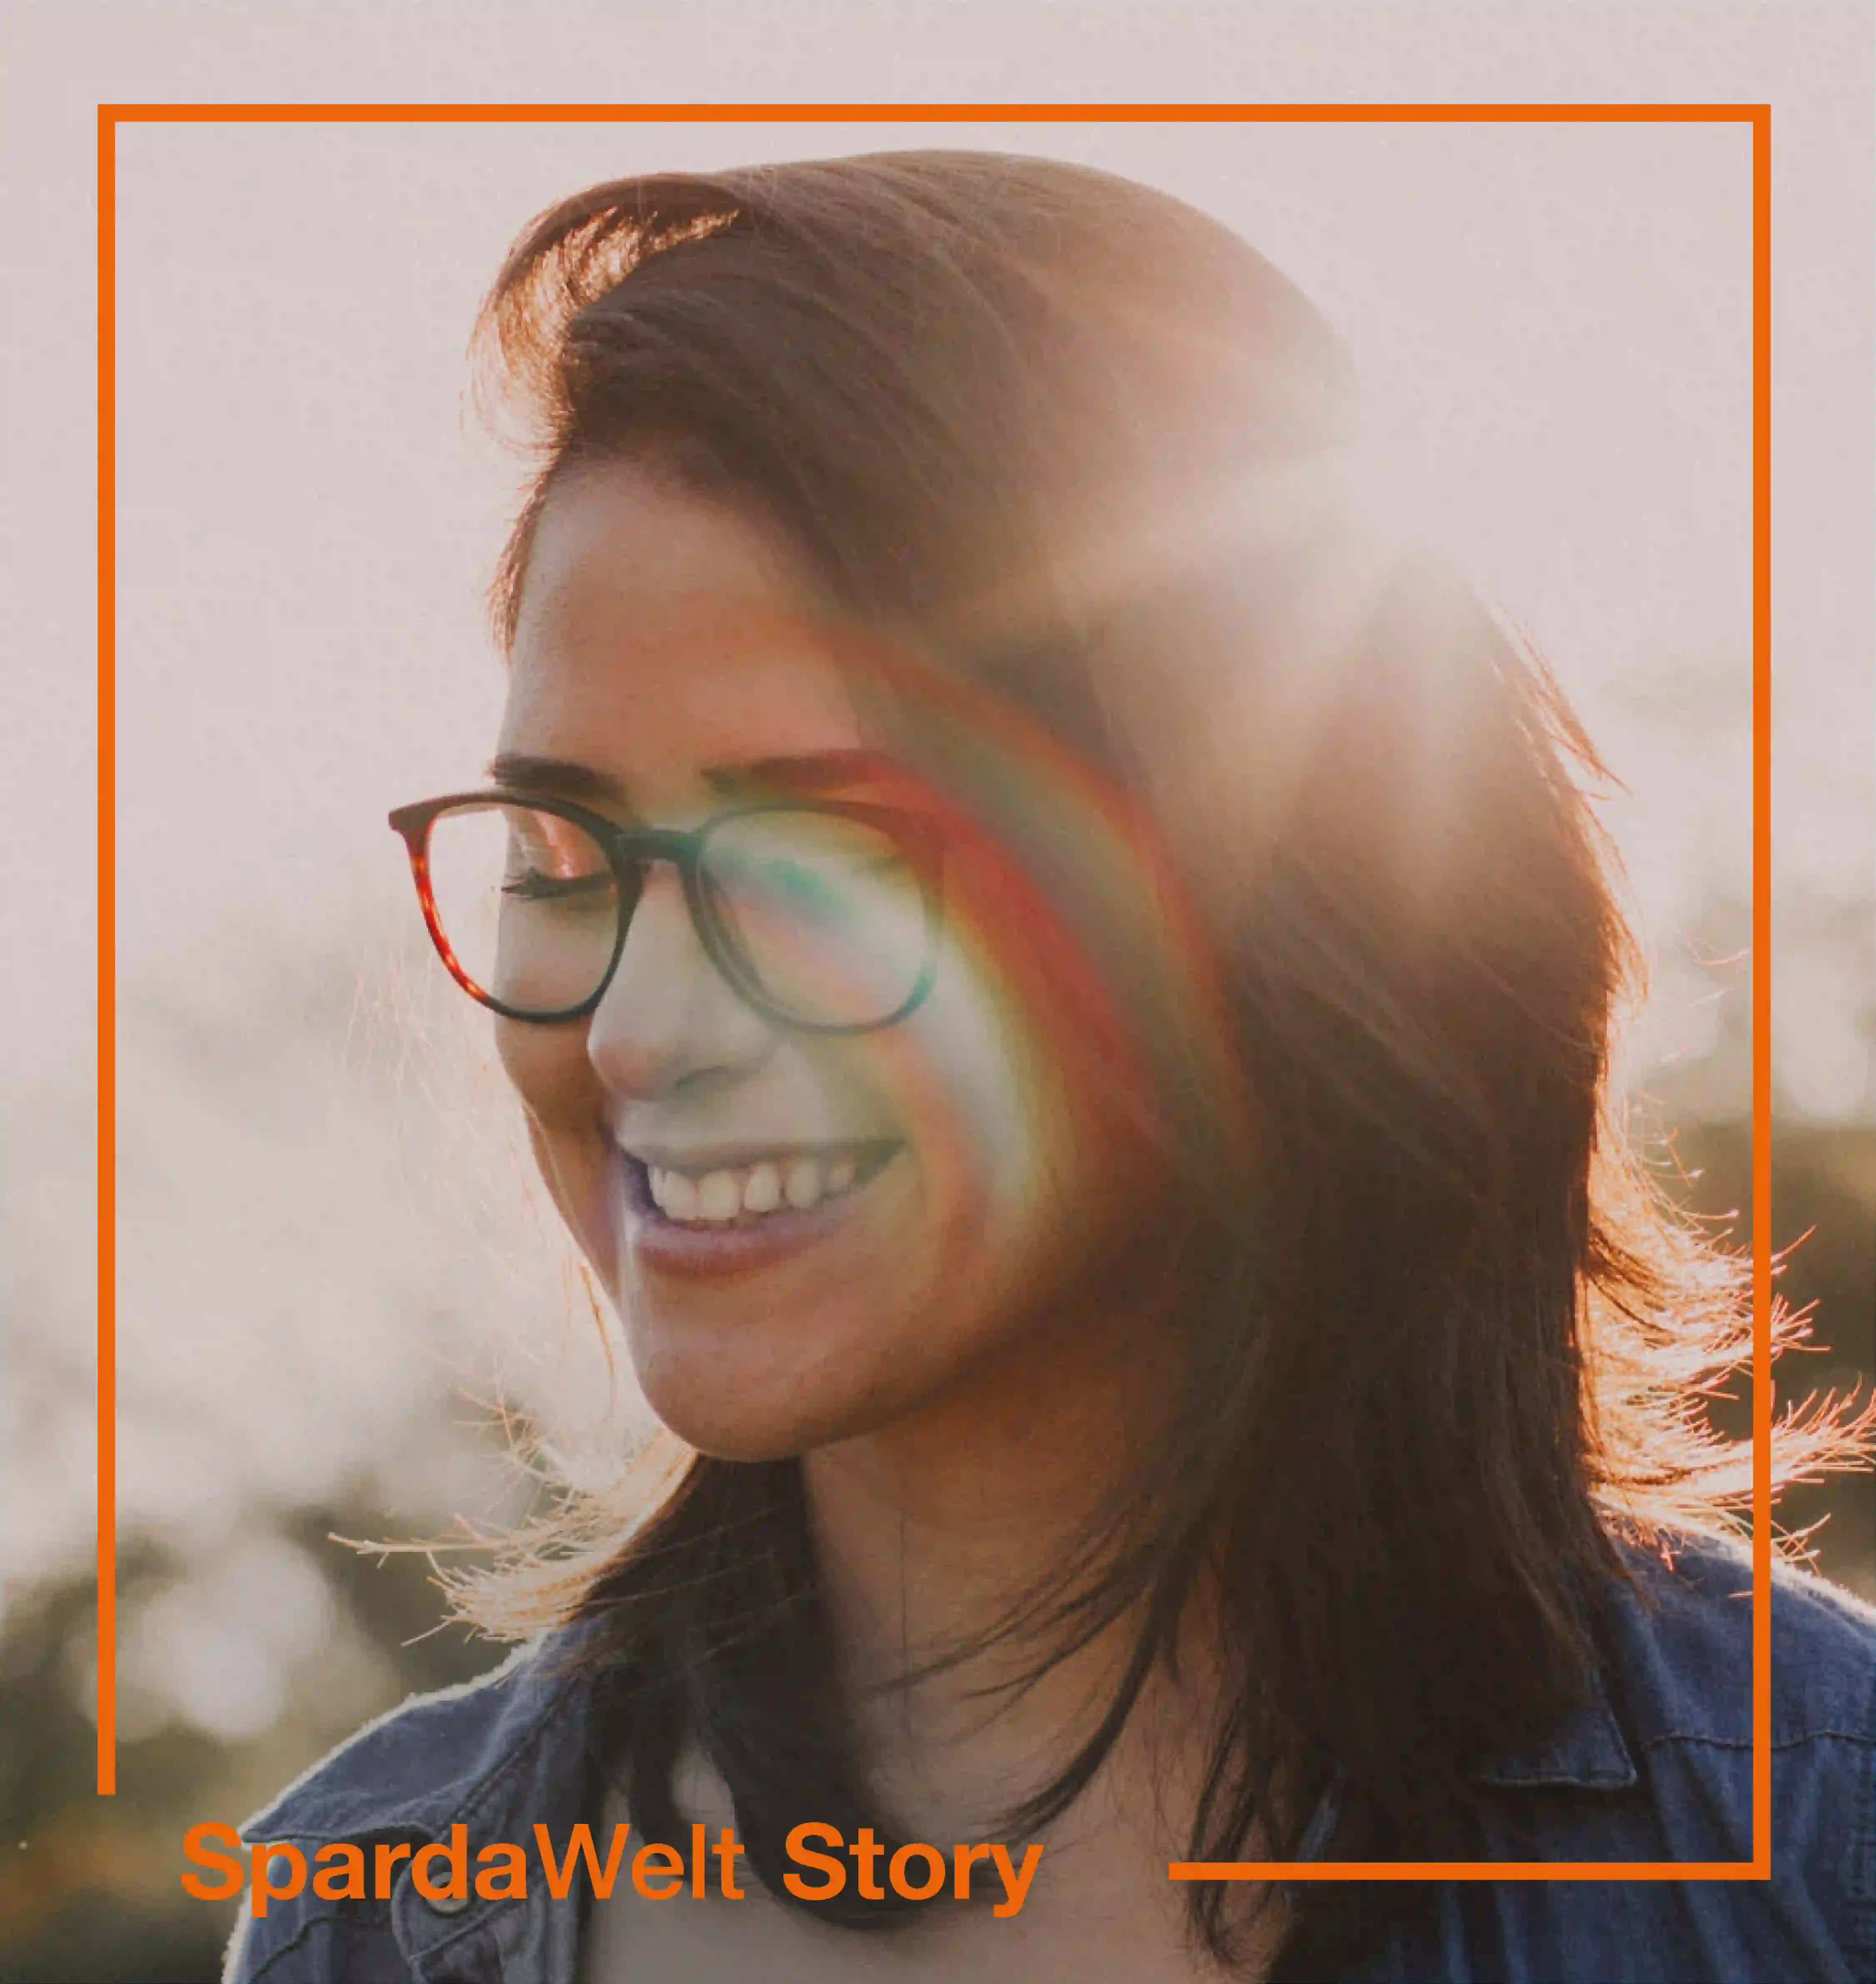 Eine junge Frau steht in der Natur. Die Sonne scheint und sie lächelt mit geschlossenen Augen. Um das Bild herum ist ein orangener Rahmen. Der Schriftzug "SpardaWelt Story" weißt darauf hin, dass es sich um eine Empfehlung zu einer anderen SpardaWelt Story handelt.